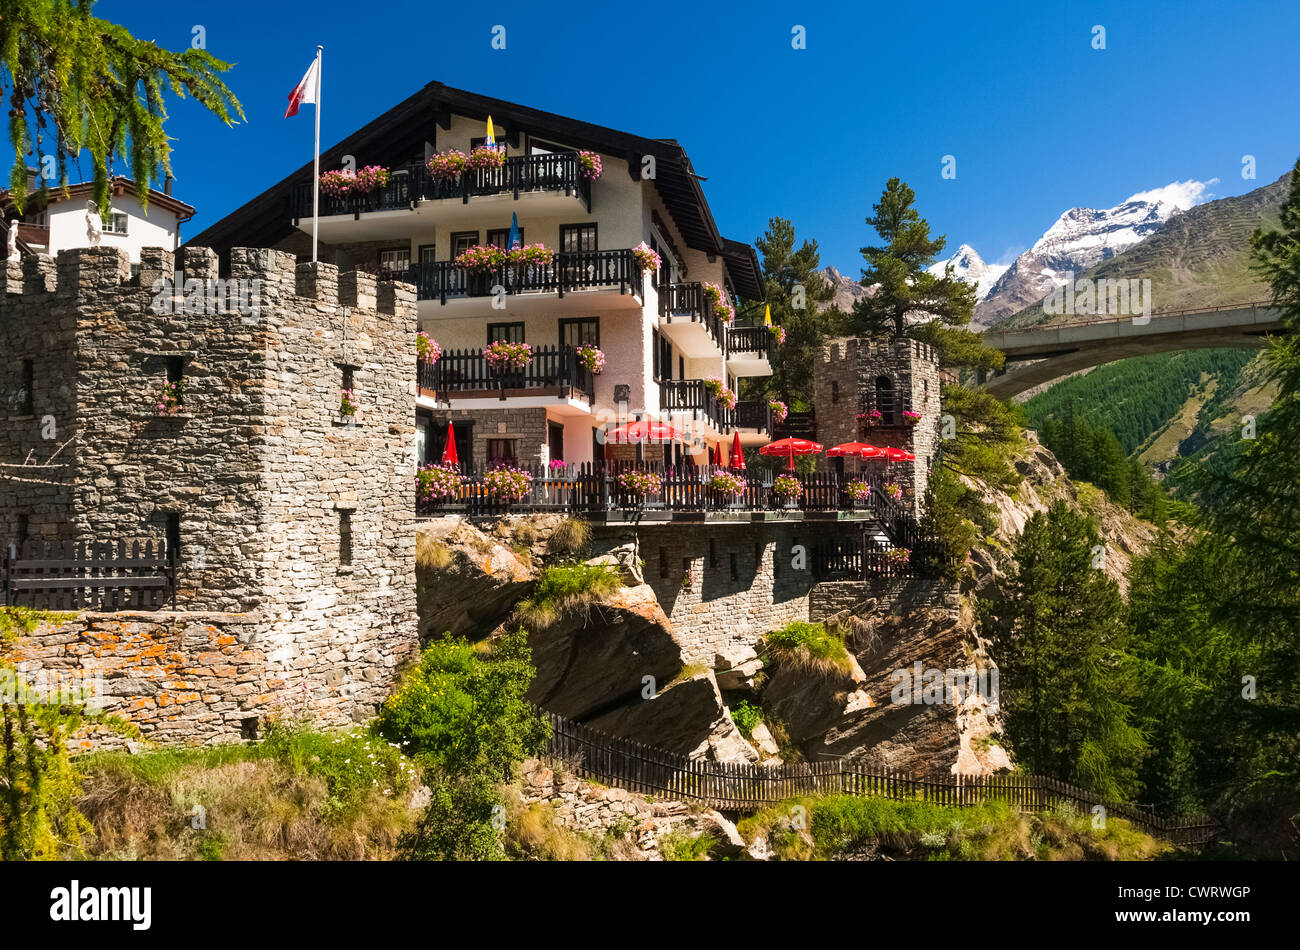 Un refuge de montagne suisse. Appartements situé près de la rivière Feevispa à Saas Fee en Suisse. Banque D'Images